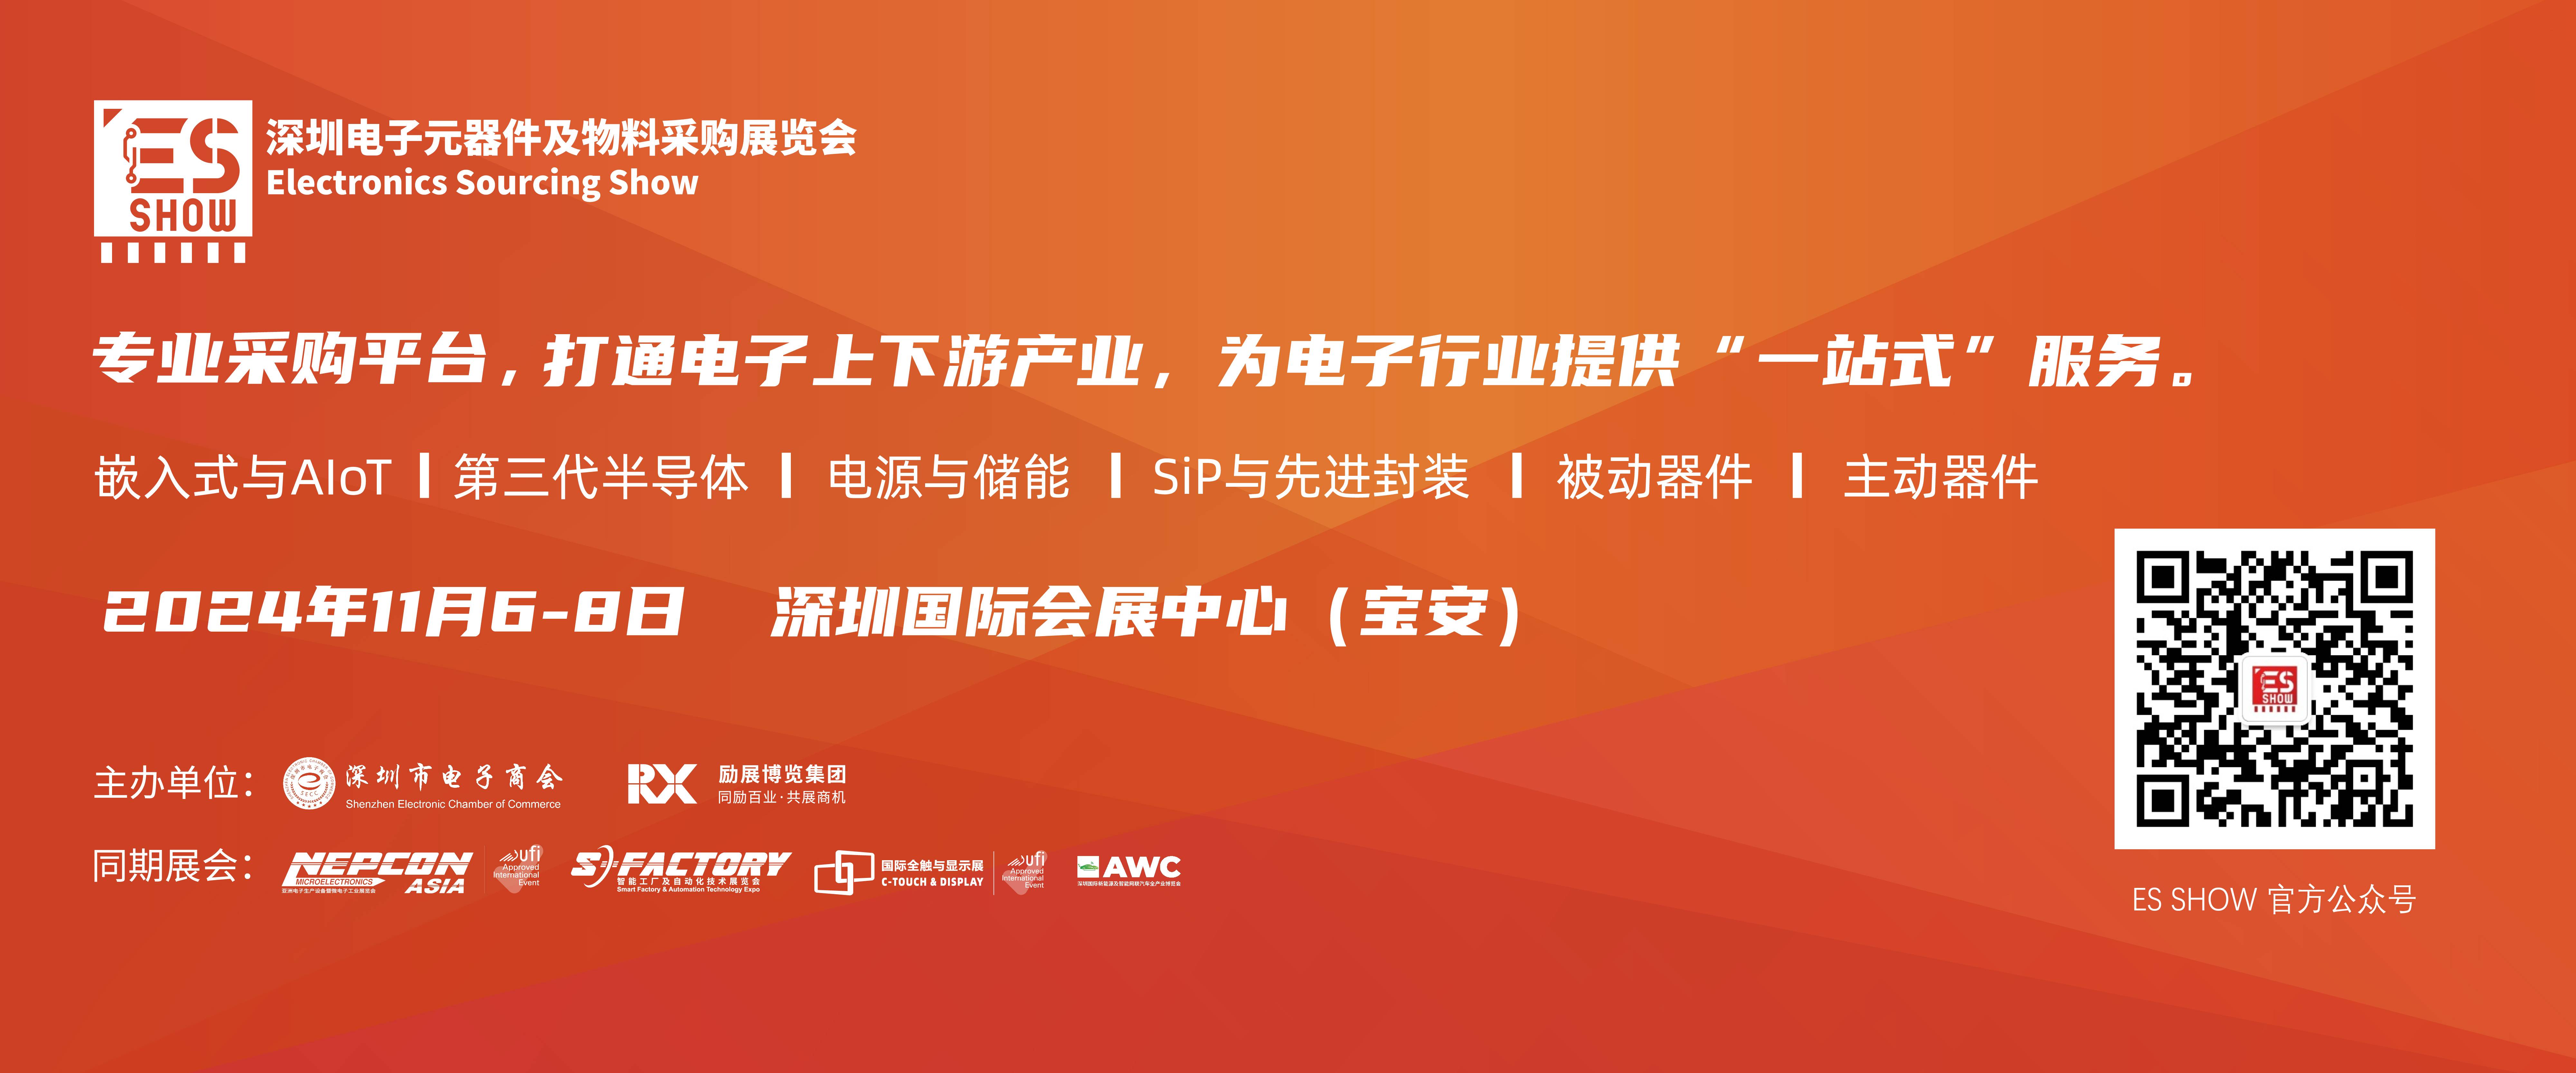 深圳电子展 GPU 华南电子展 AI 国产GPU 中国电子展